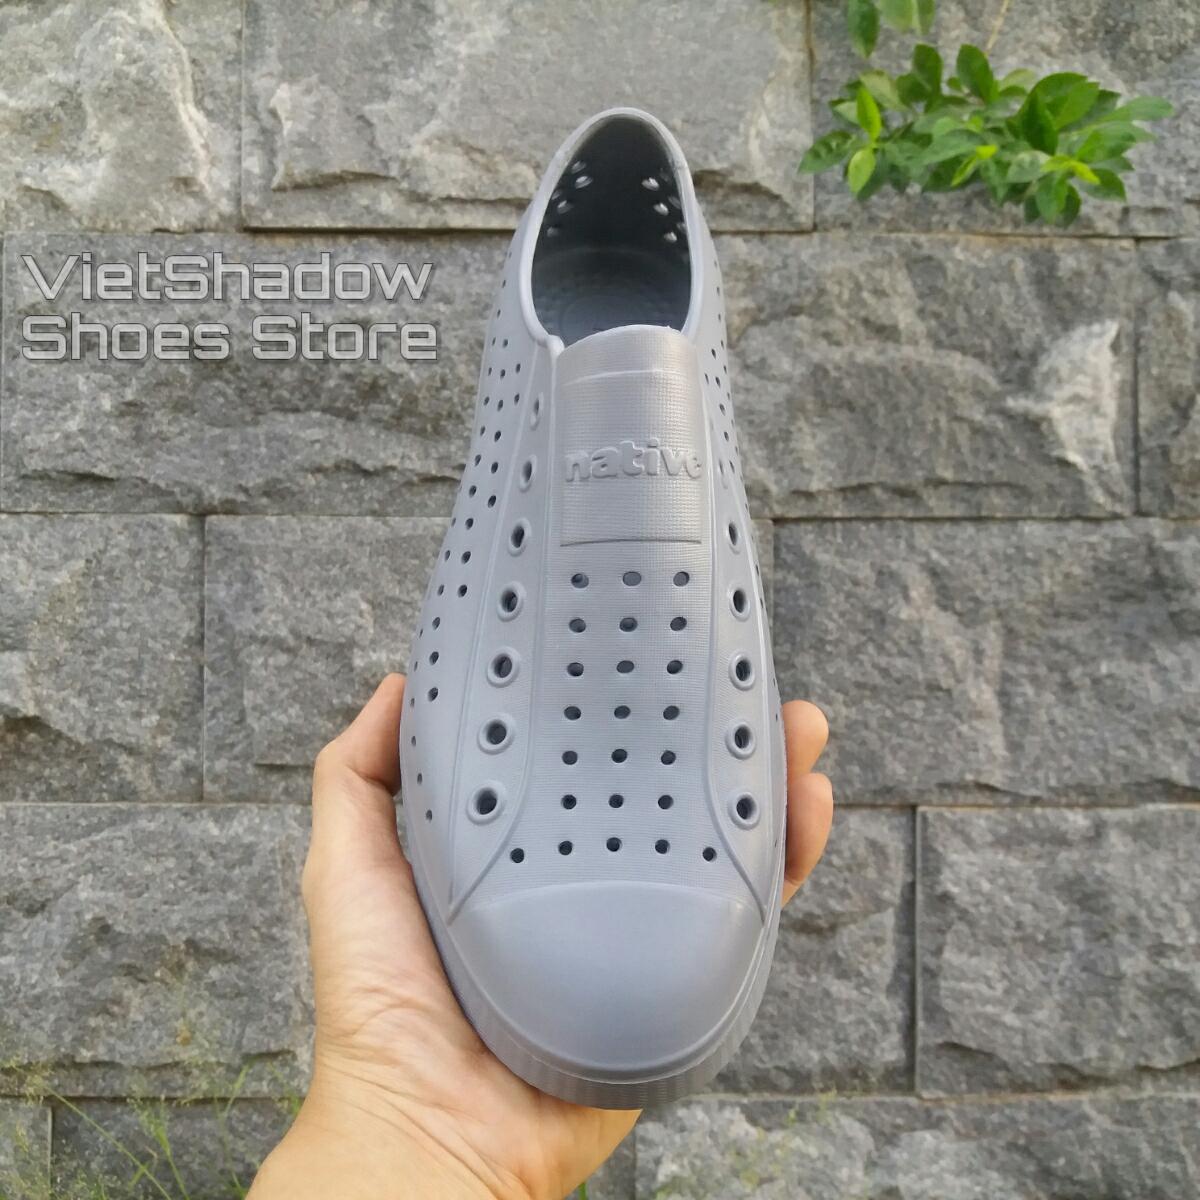 Giày nhựa WNC Native đi biển, lội nước, đi mưa - Chất liệu EVA siêu nhẹ, không thấm nước - Giày một màu trơn (không viền)